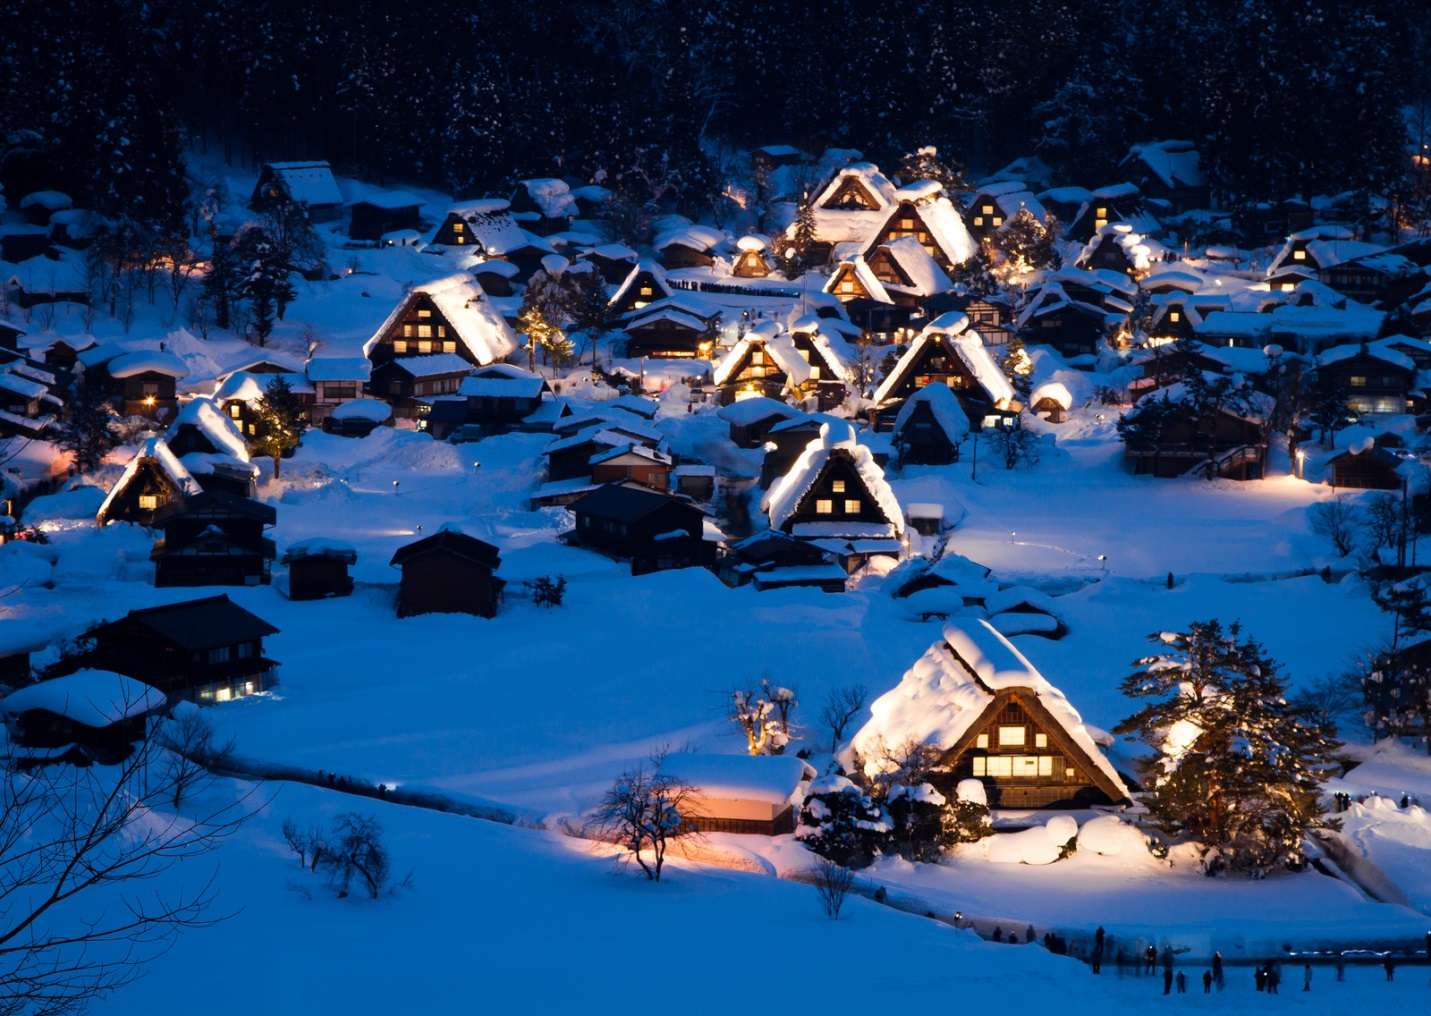 Khung cảnh ngôi làng tuyết đẹp đến mức người ta cứ nghĩ chỉ xuất hiện trong những giấc mơ thần thoại